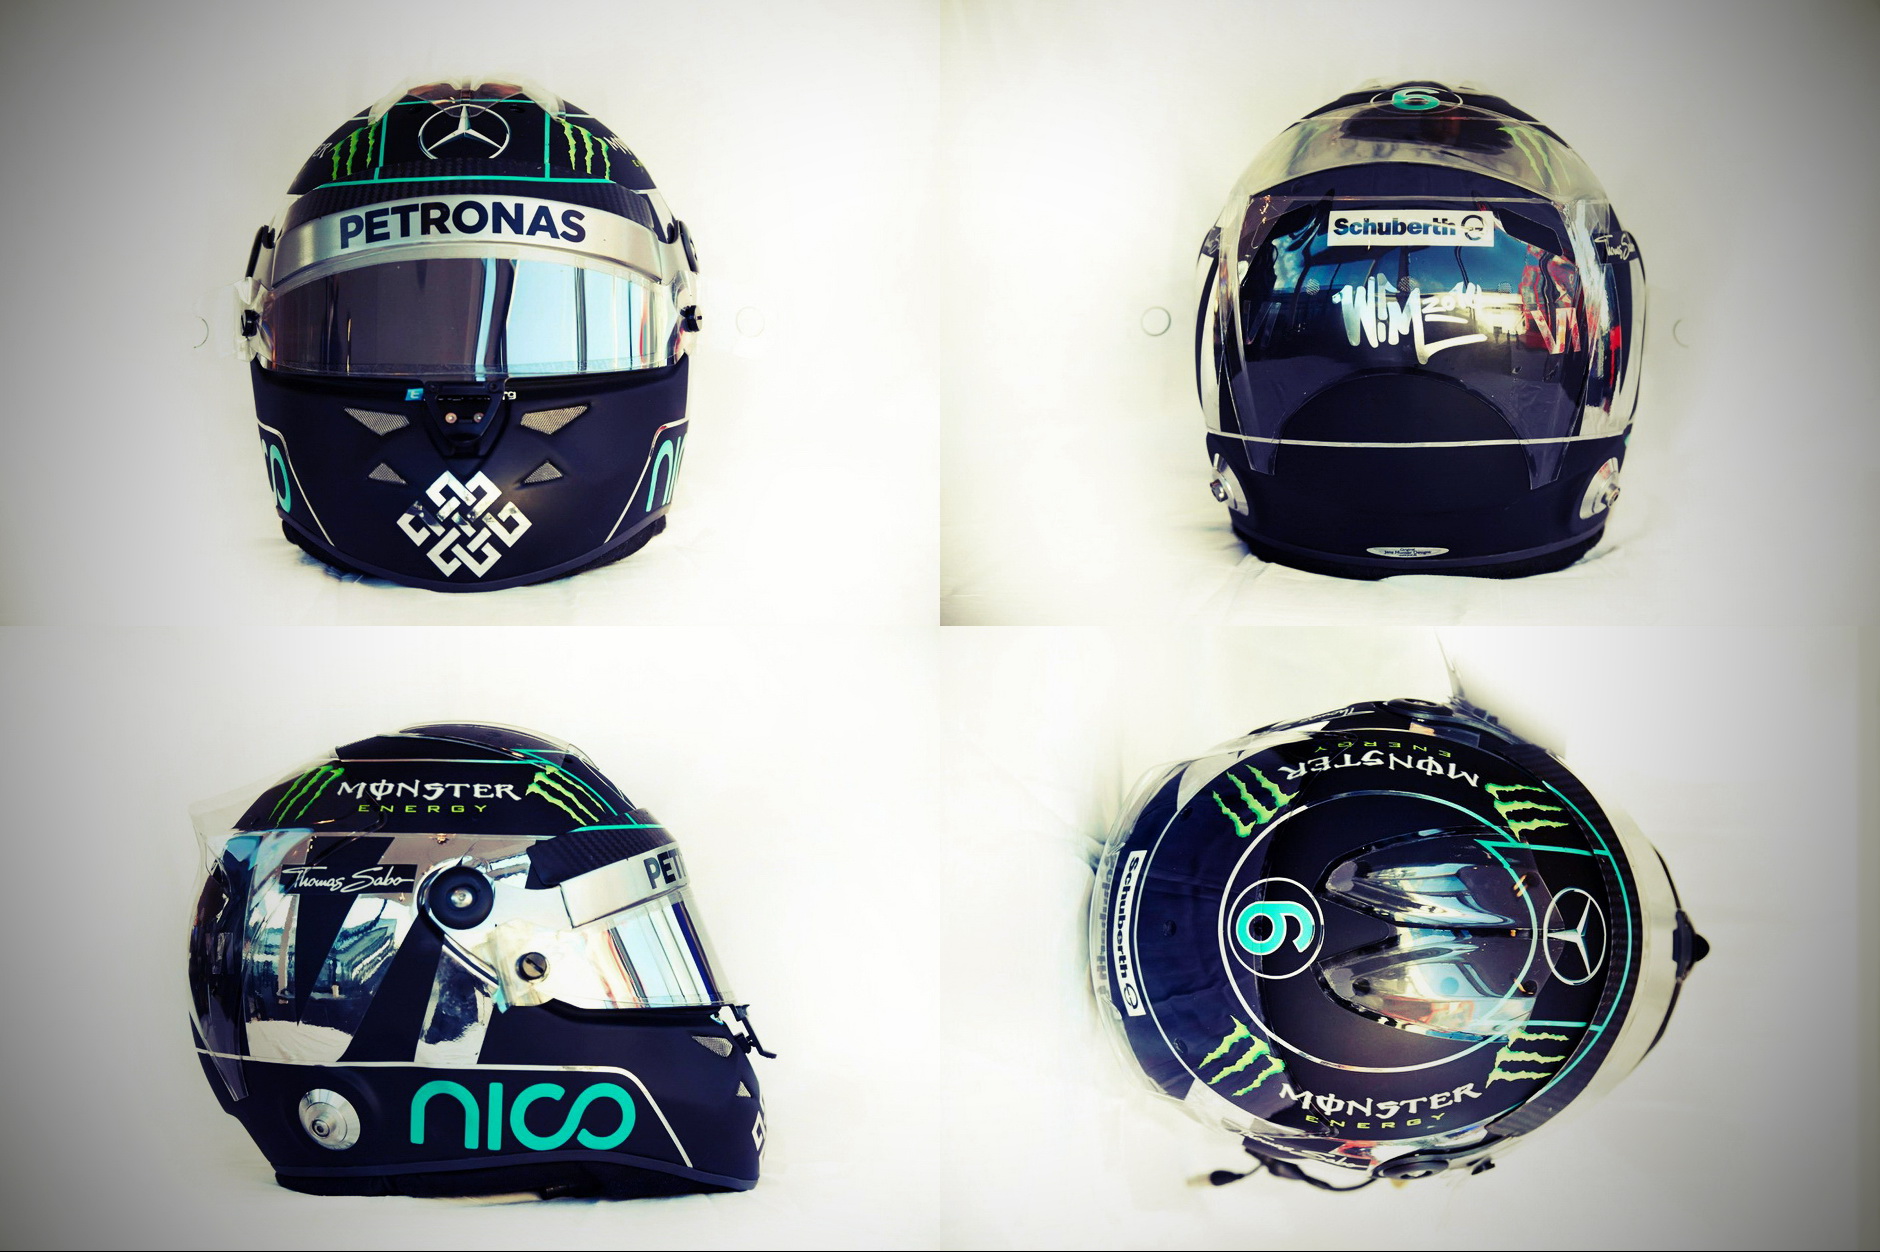 Шлем Нико Росберга на сезон 2014 года | 2014 helmet of Nico Rosberg